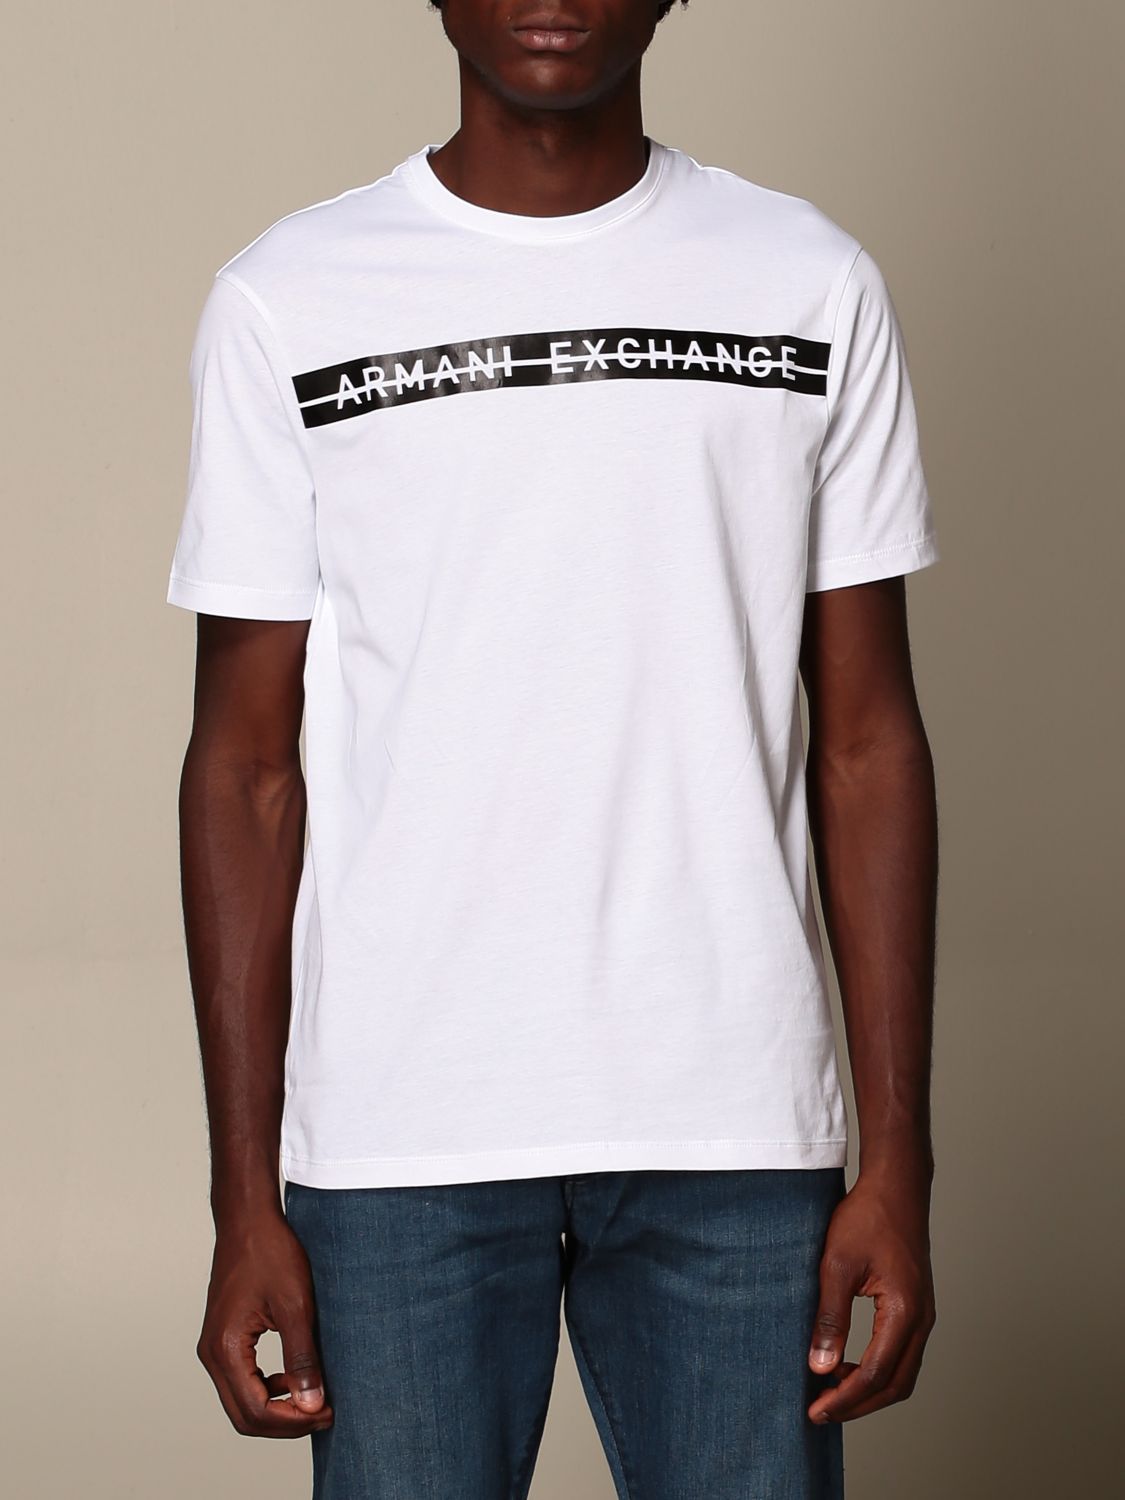 ARMANI EXCHANGE: logo T-shirt | T-Shirt Armani Exchange Men White | T ...